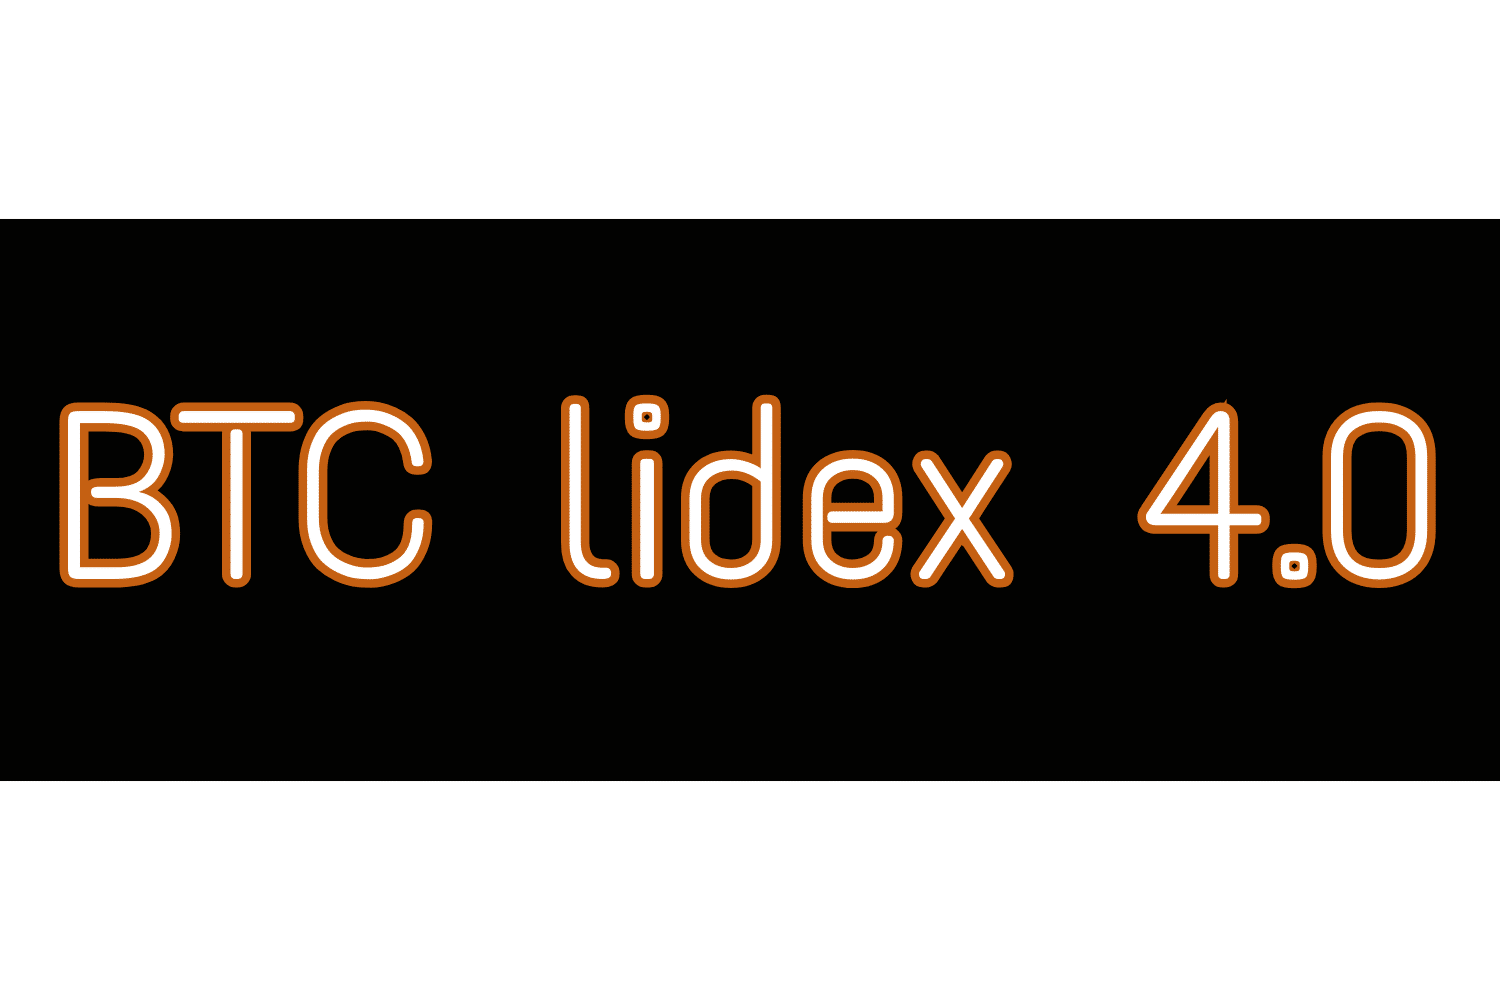 Inscrição no Bit Lidex Soft 4.0